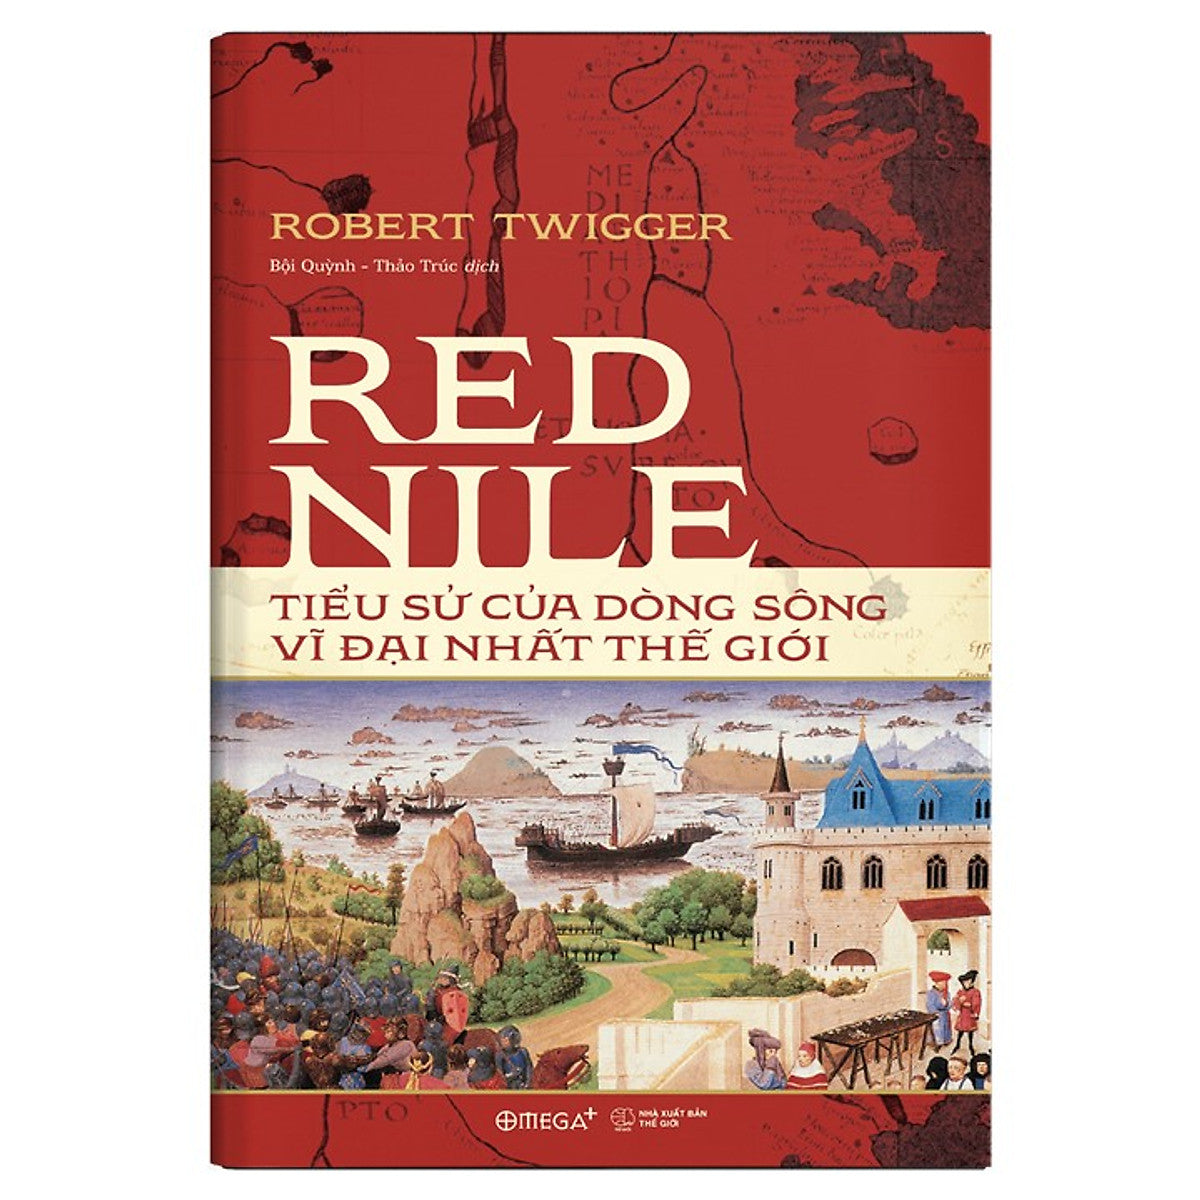 Bộ Sách Lịch Sử Châu Phi: Red Nile - Tiểu Sử Của Dòng Sông Vĩ Đại Nhất Thế Giới + Phi Châu Thịnh Vượng - Lịch Sử 5000 Năm Của Sự Giàu Có, Tham Vọng Và Nỗ Lực (Tặng Kèm Boxset)